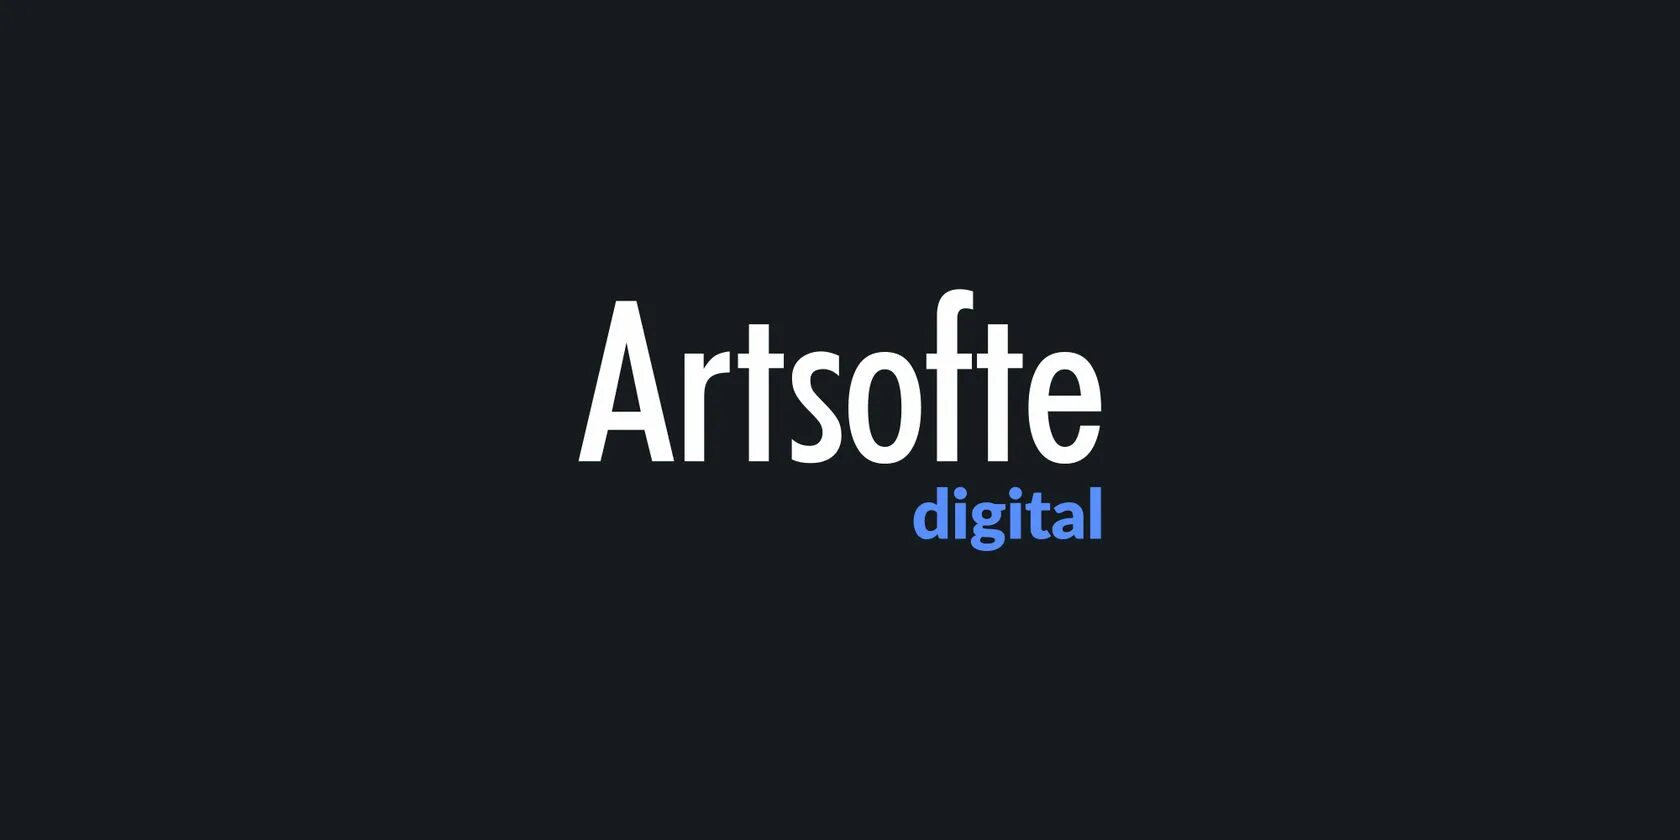 Artsofte Екатеринбург. Artsofte Digital. АРТСОФТ диджитал директор. Логотип Artsofte.